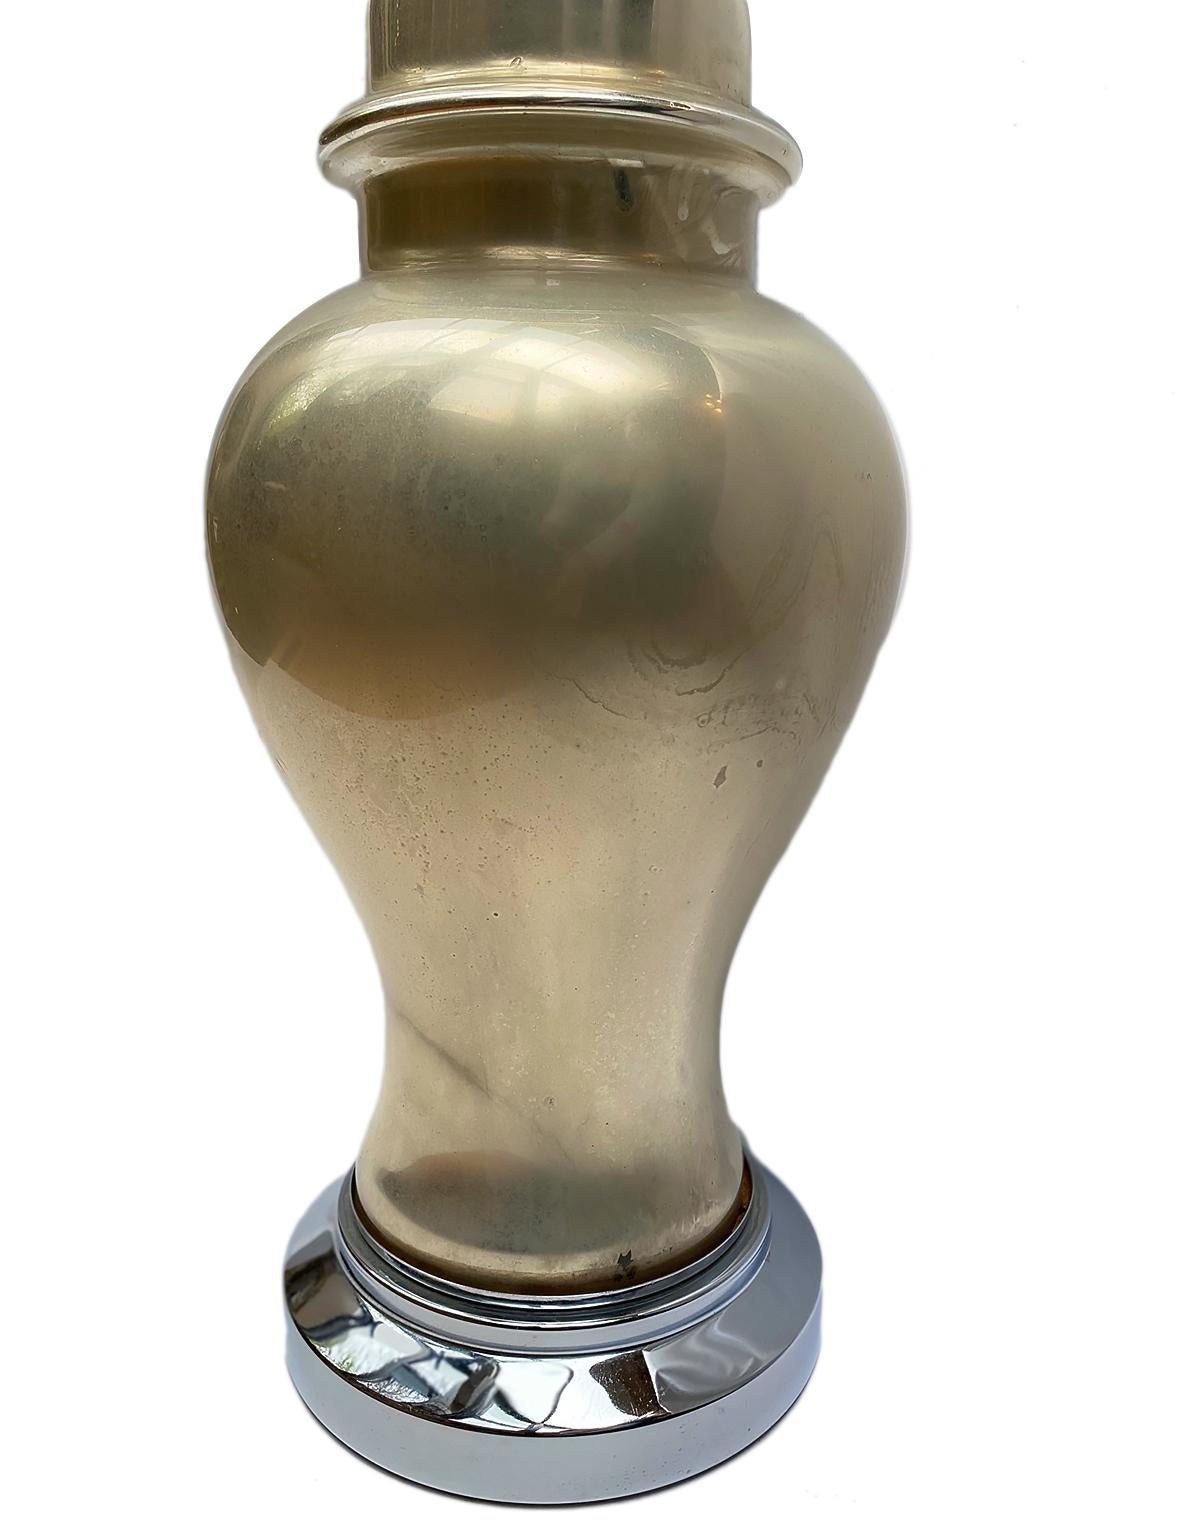 Une seule lampe de table française des années 1920 en verre au mercure avec des bases en métal argenté.

Mesures :
Hauteur 18